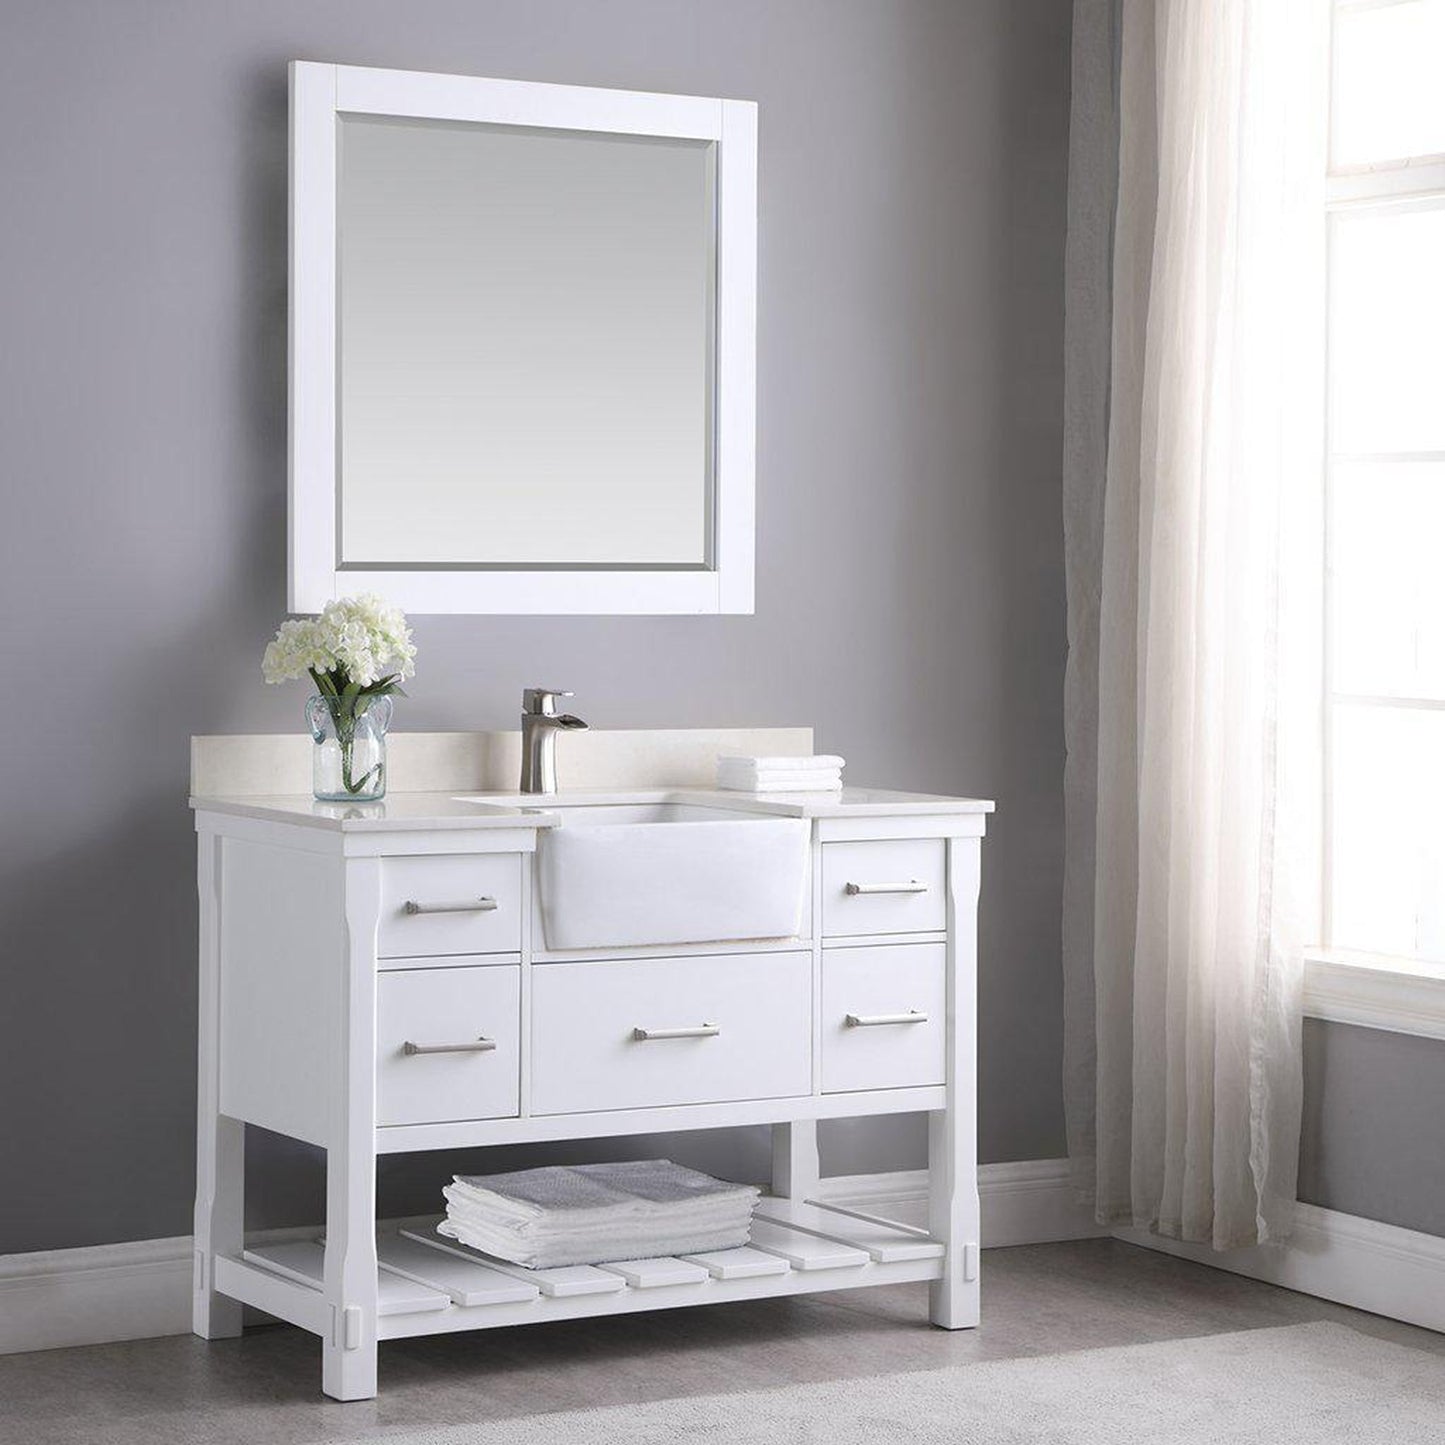 Altair Georgia 48" Single White Freestanding Bathroom Vanity Set With Mirror, Aosta White Composite Stone Top, Rectangular Farmhouse Sink, Overflow, and Backsplash